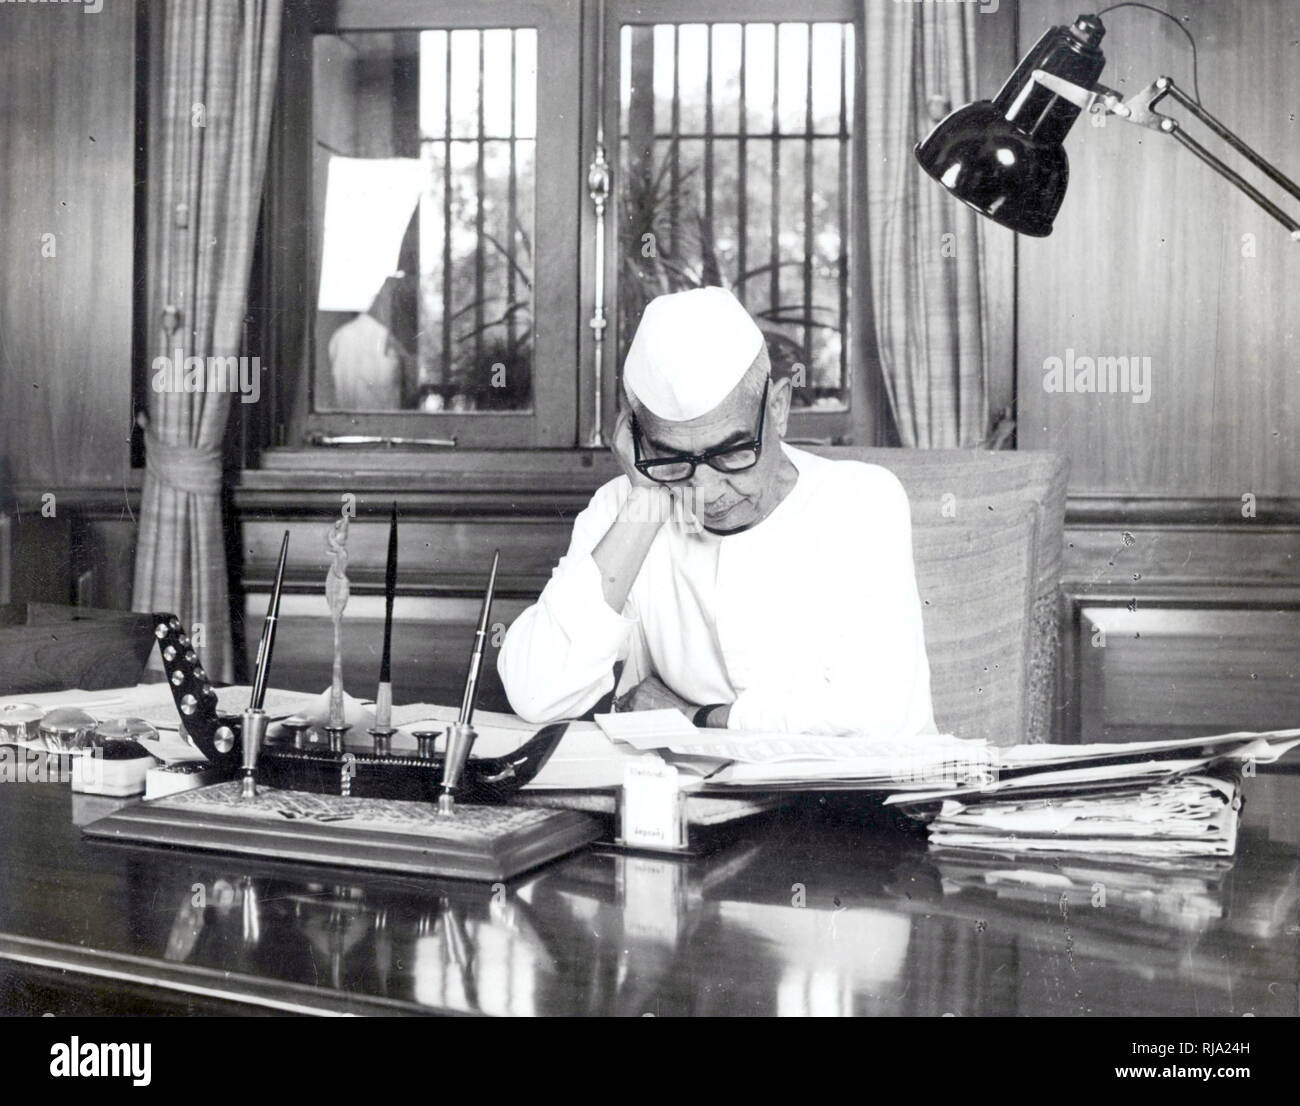 Chaudhary Charan Singh (1902 - 1987) ; 5e premier ministre de l'Inde, servant de 28 juillet 1979 jusqu'au 14 janvier 1980. Janata Party (1977-1979) Banque D'Images